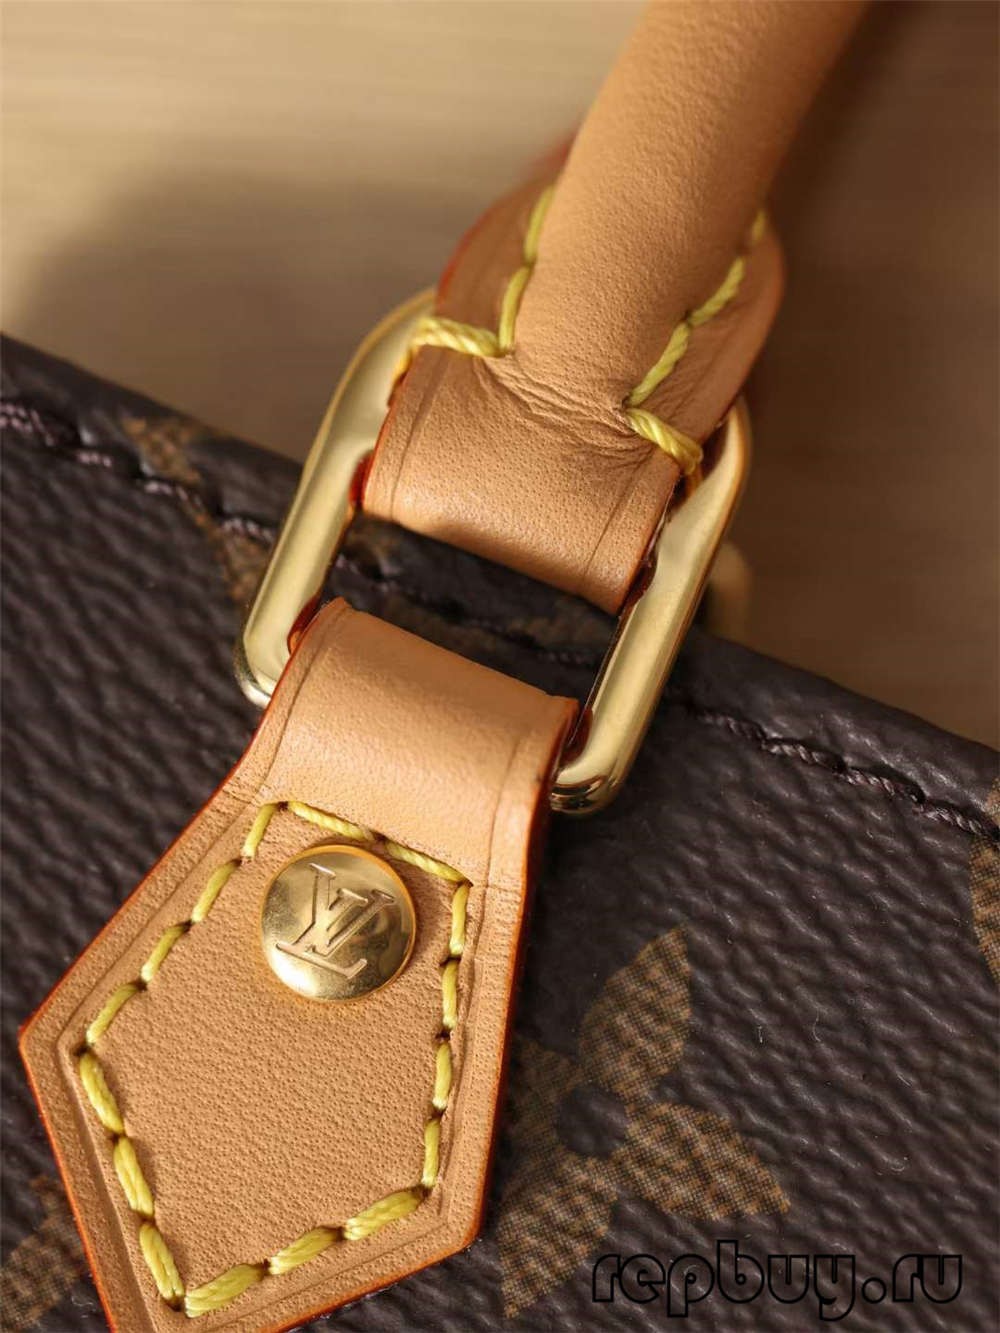 Louis Vuitton M69442 Petit Sac Plat найвищої якості репліки сумок (2022 Оновлено) - Інтернет-магазин підробленої сумки Louis Vuitton найкращої якості, копія дизайнерської сумки ru